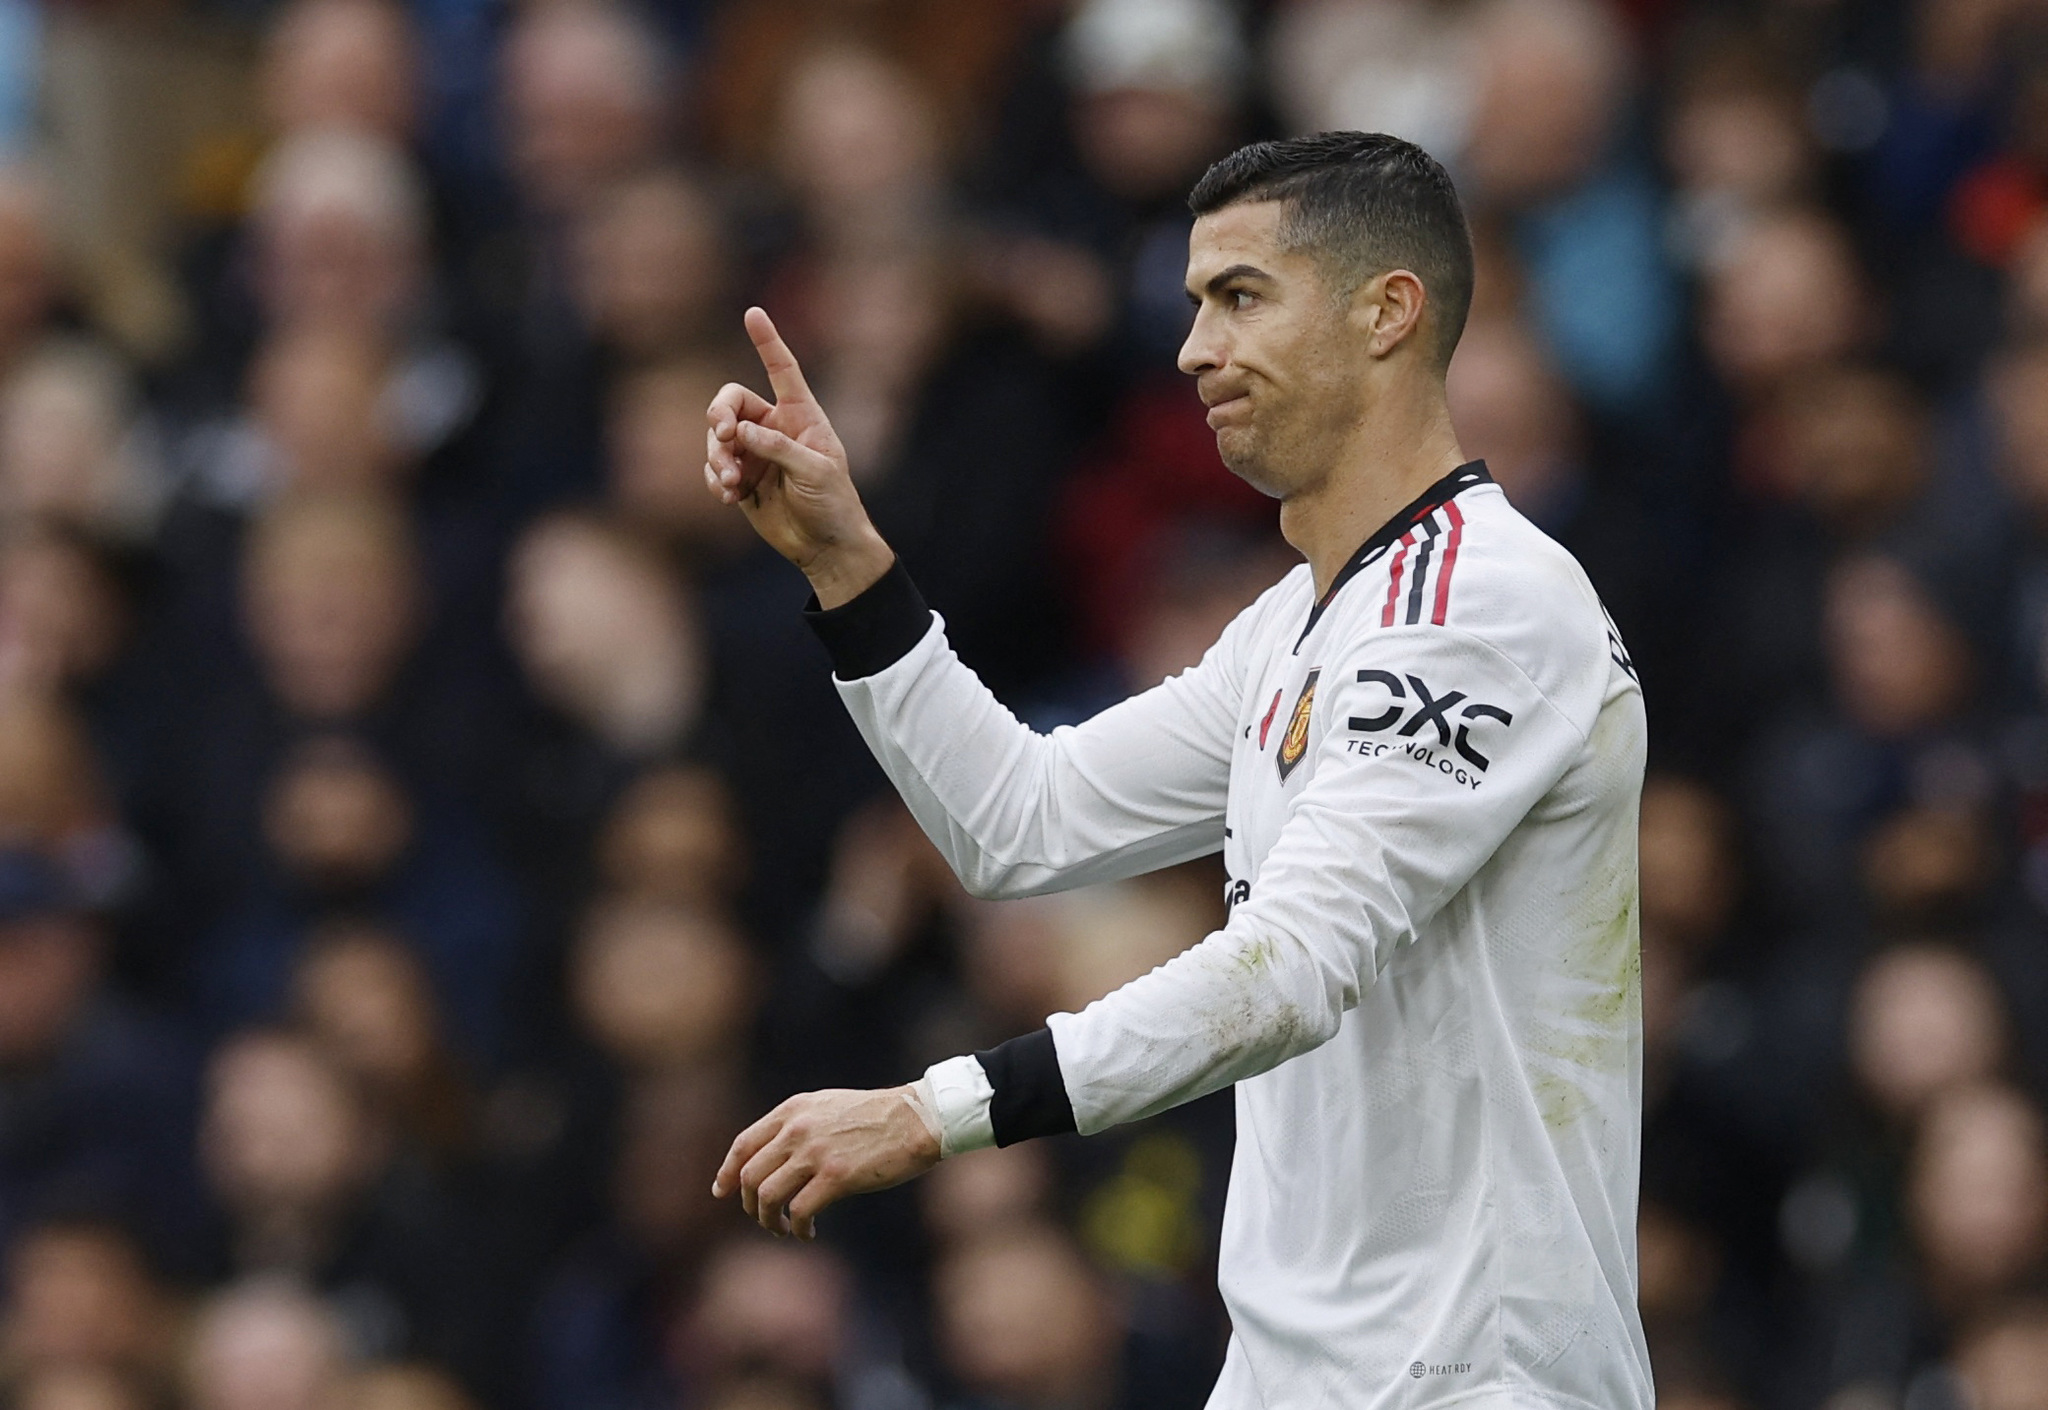 Cristiano Ronaldo explota contra el Manchester United, dice 'sentirse traicionado' por el club